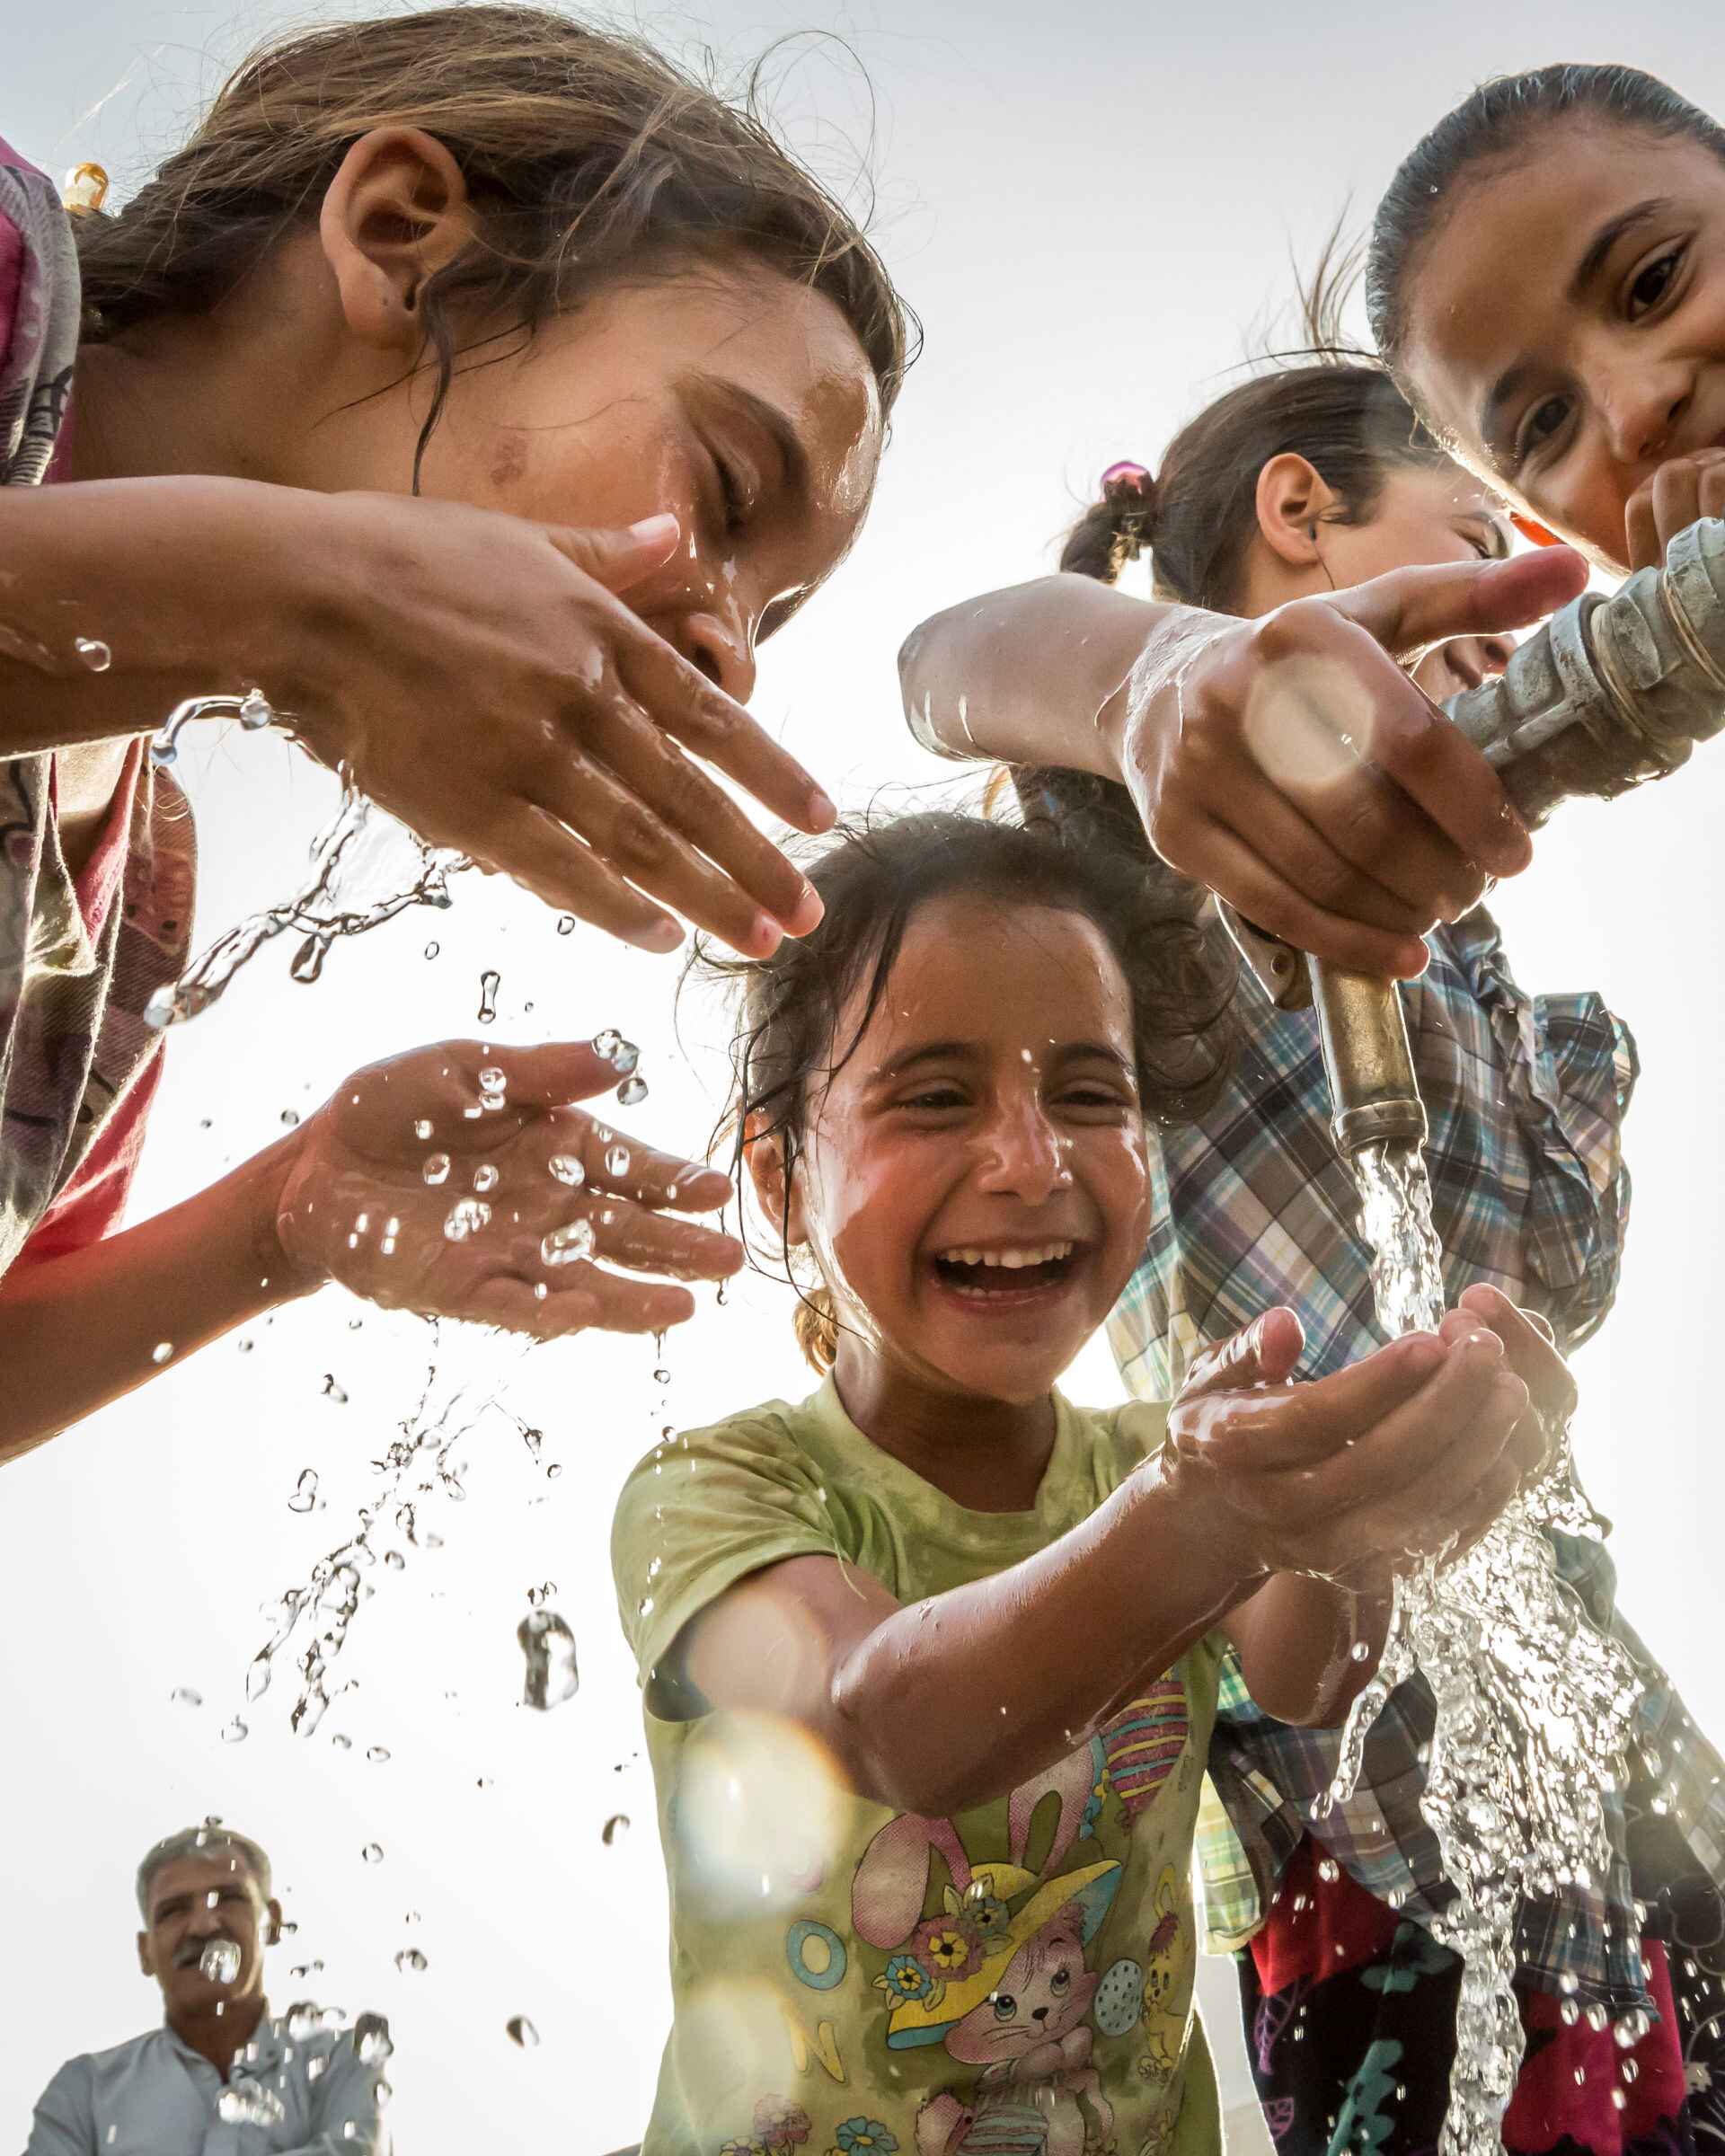 Kinder an Wasserentnahmestelle im Irak - Foto: Emily Kinskey für arche noVa